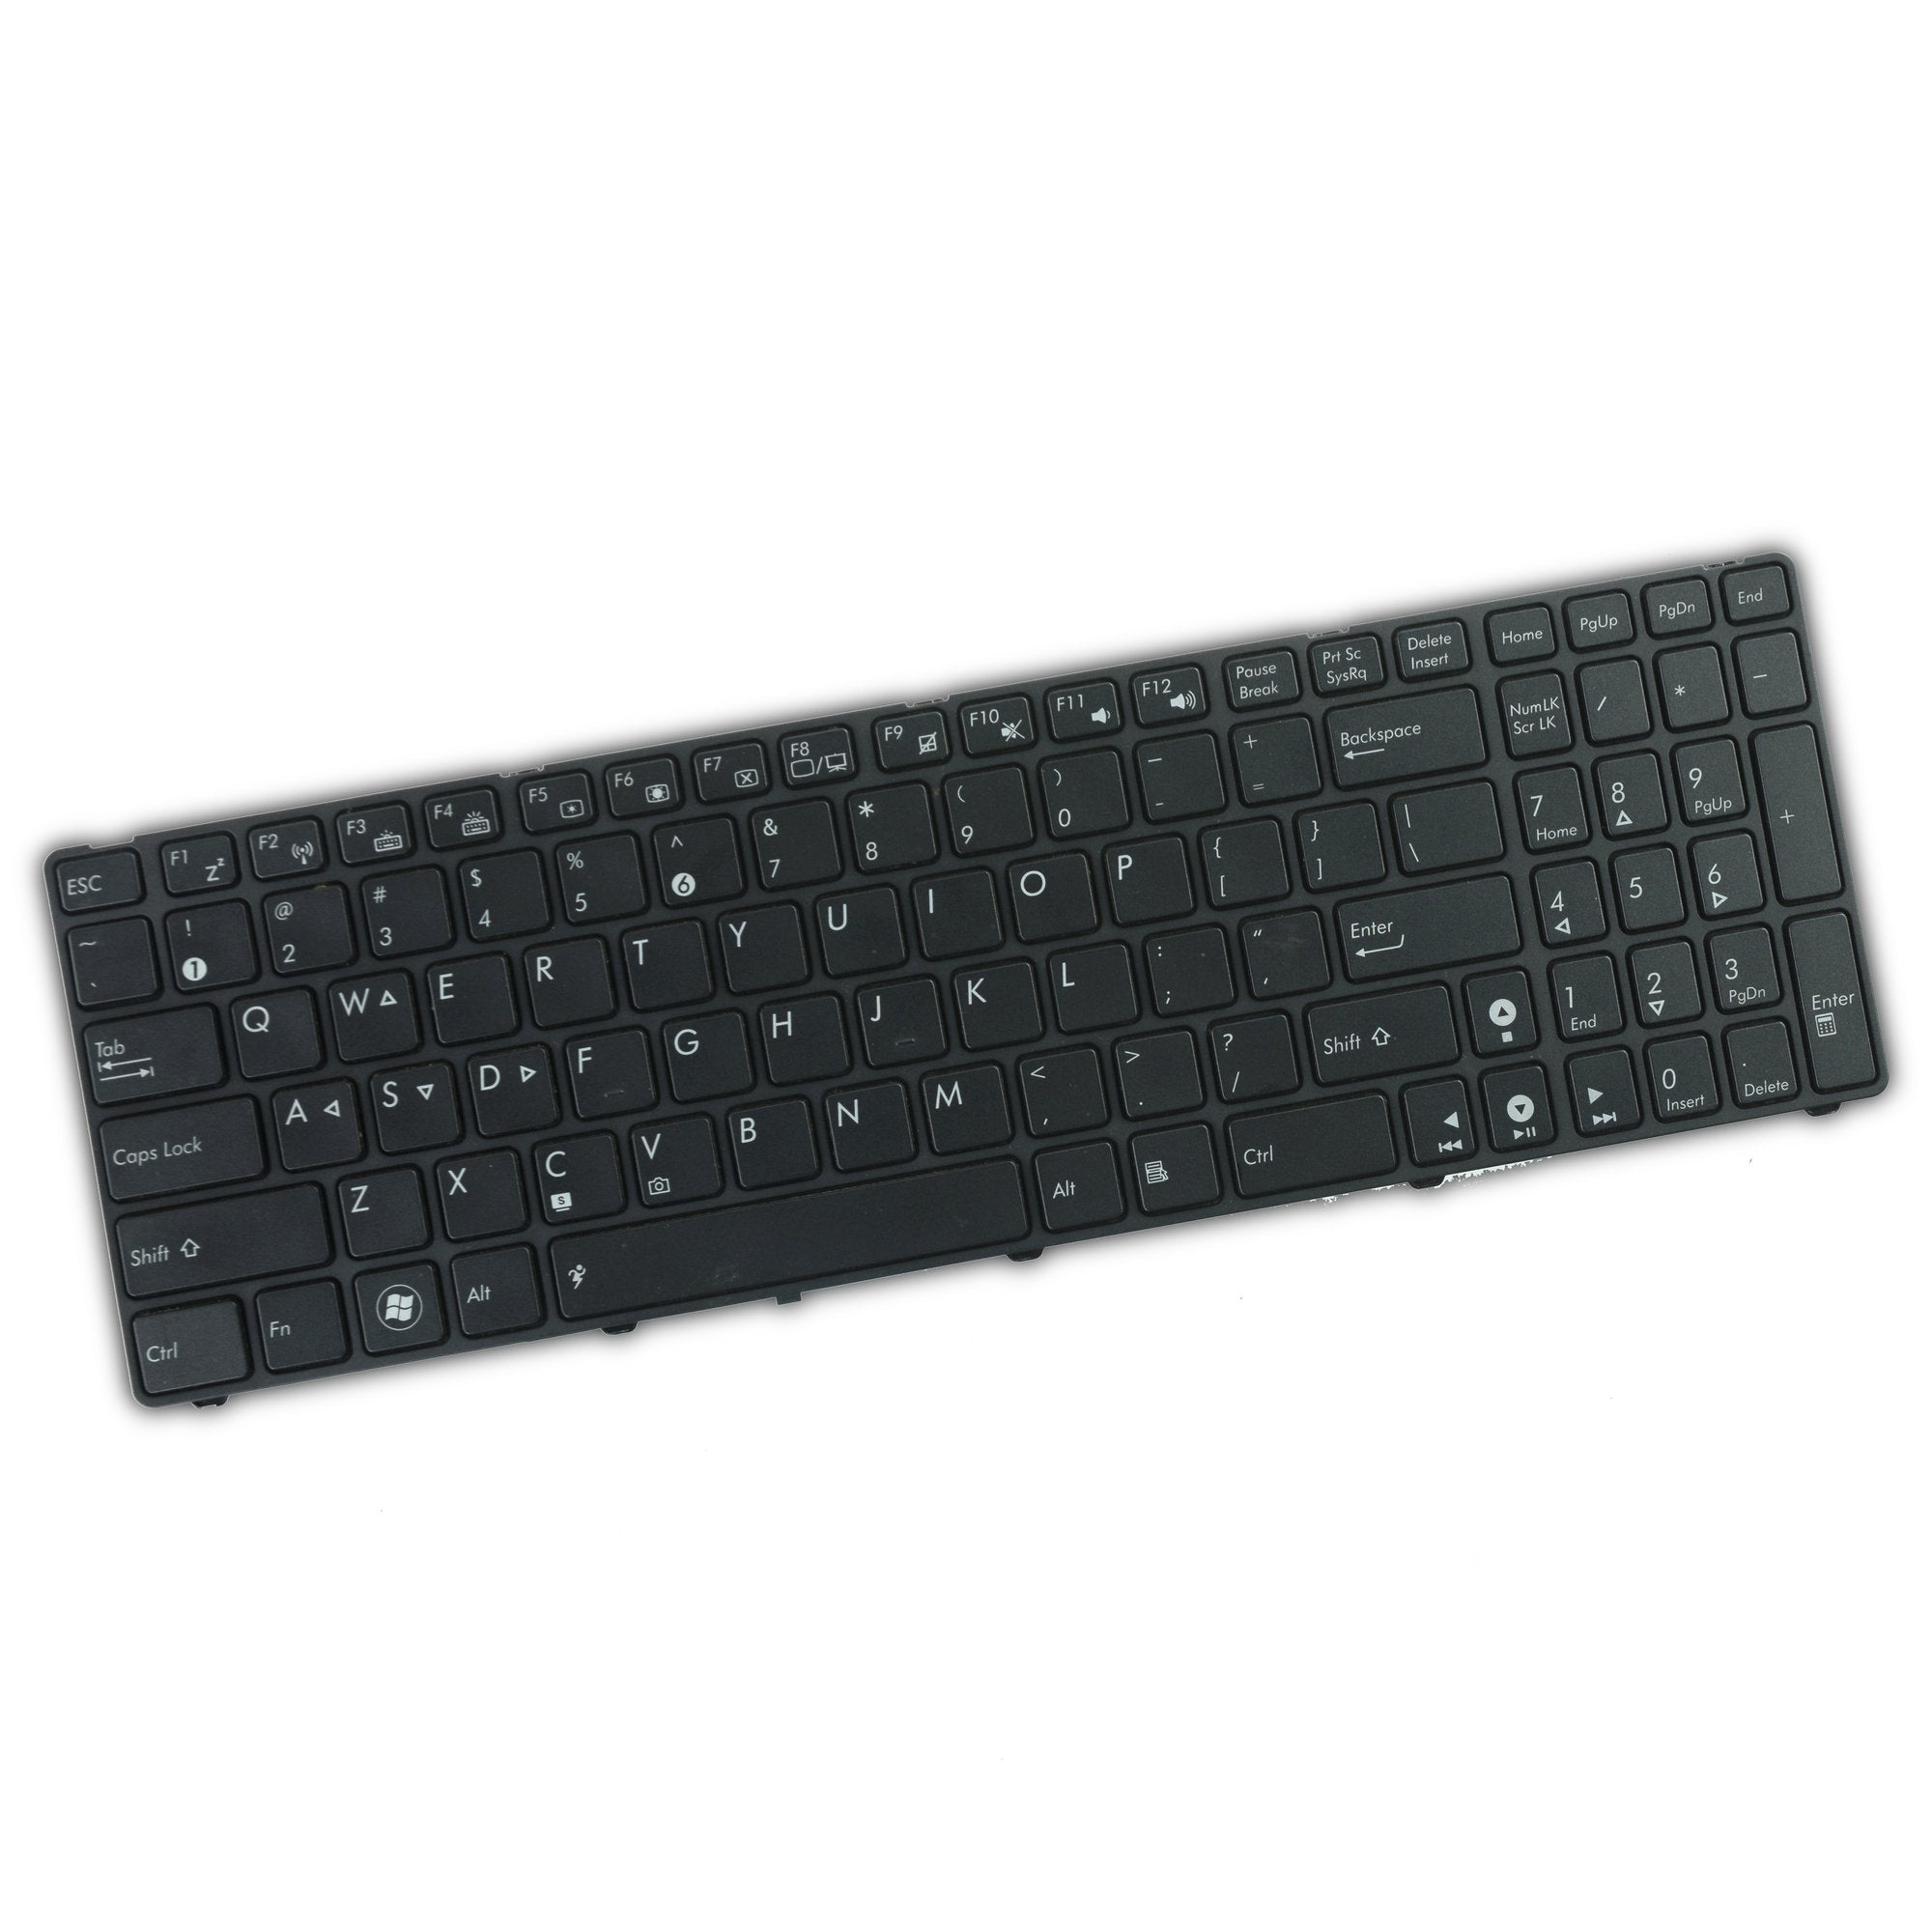 ASUS ROG G73Jh Keyboard